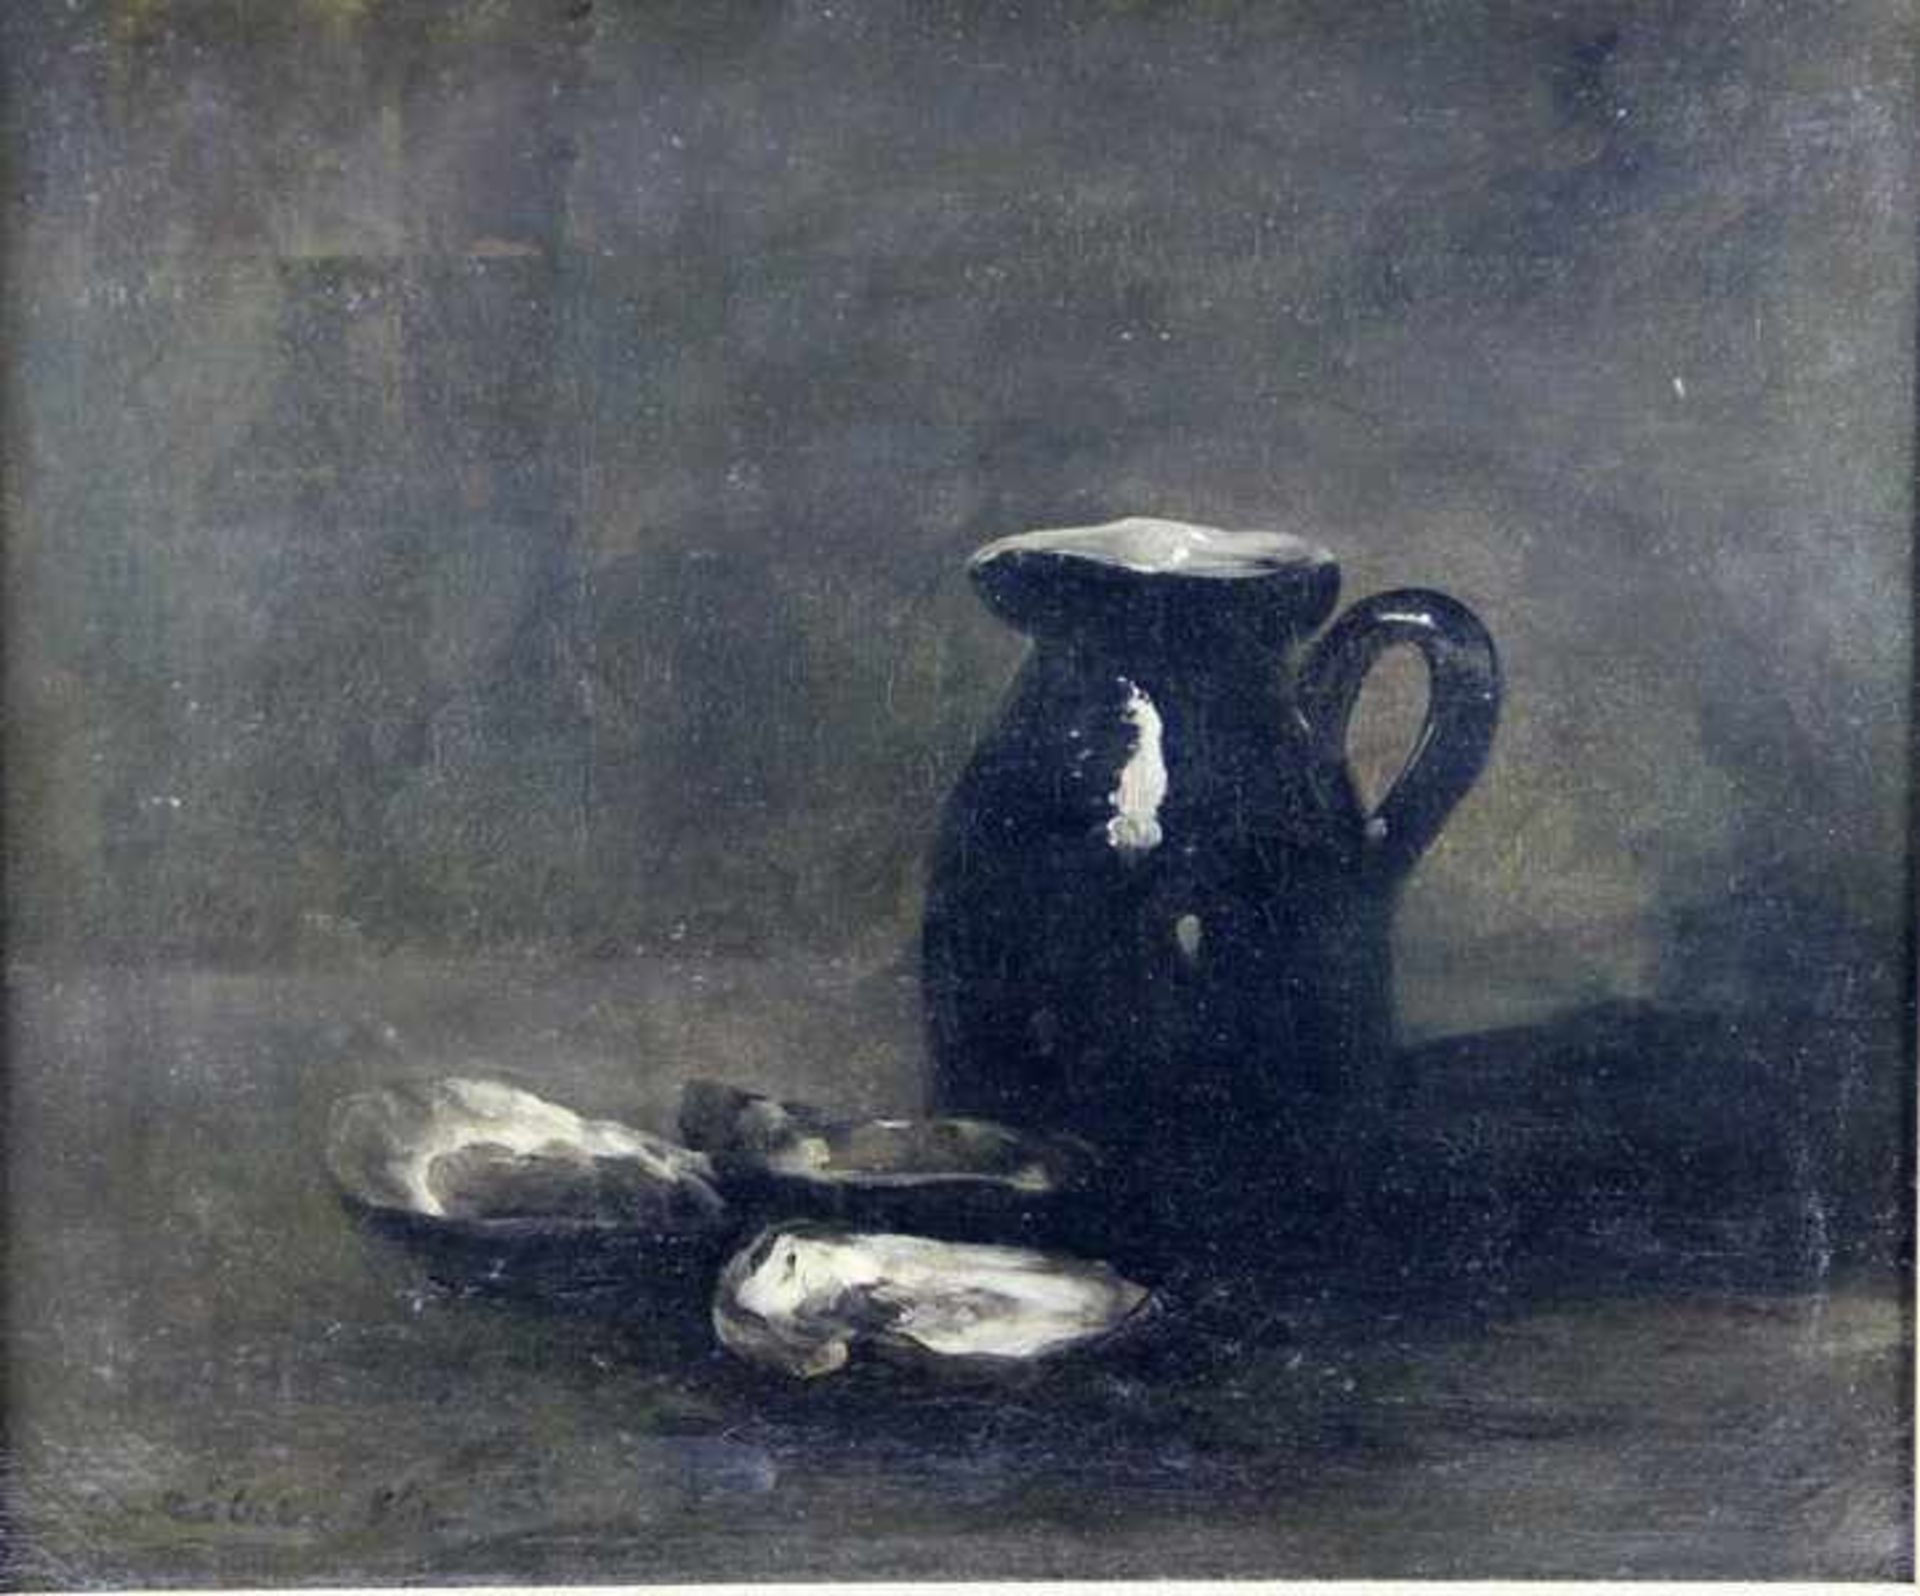 Ribot, Theodule Augustin1823-1891, Stilleben, Tonkrug mit 3 geöffneten Austern, impressionistische